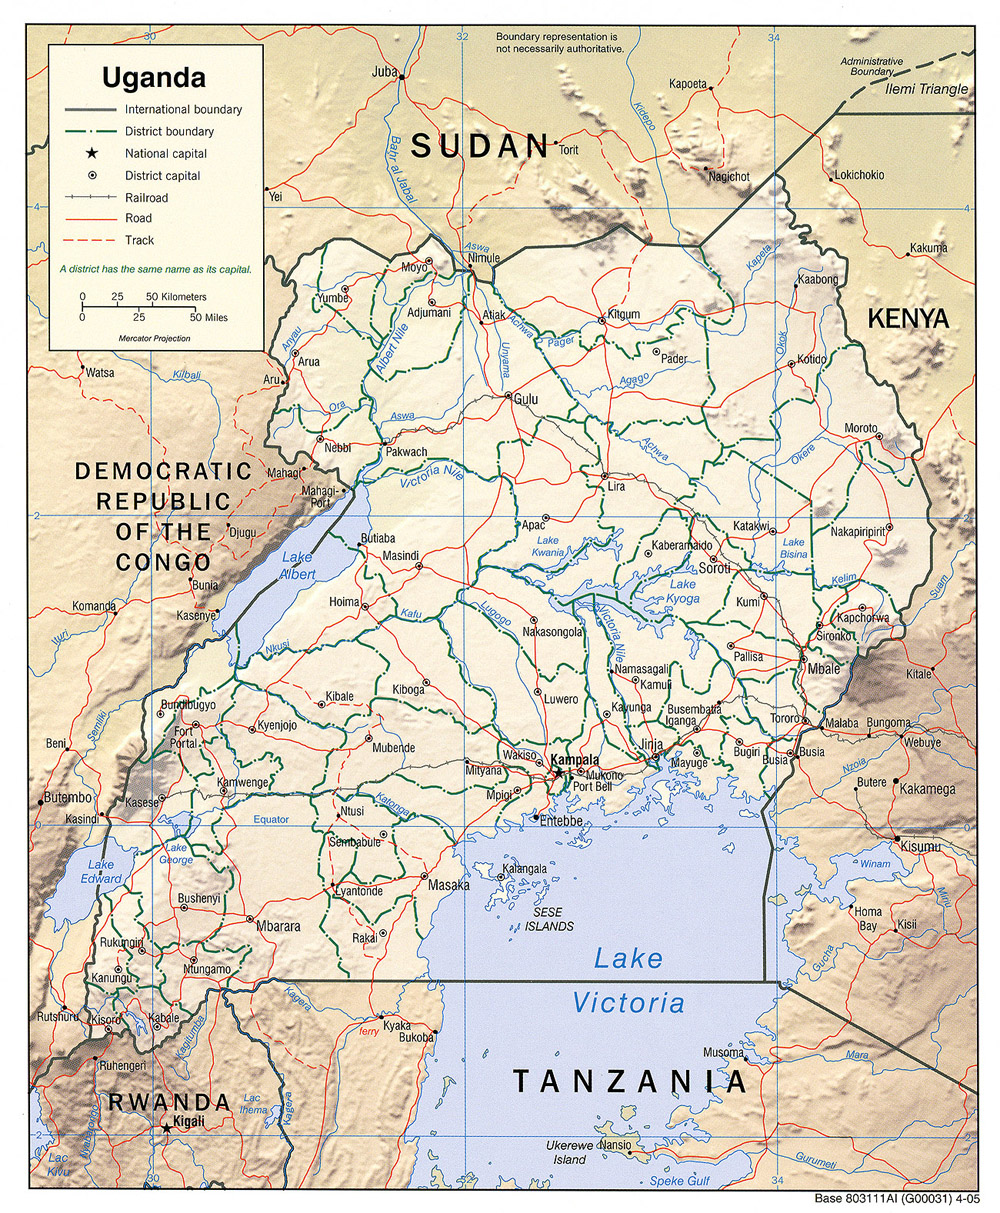 Mapa físico y político de Uganda (2005)